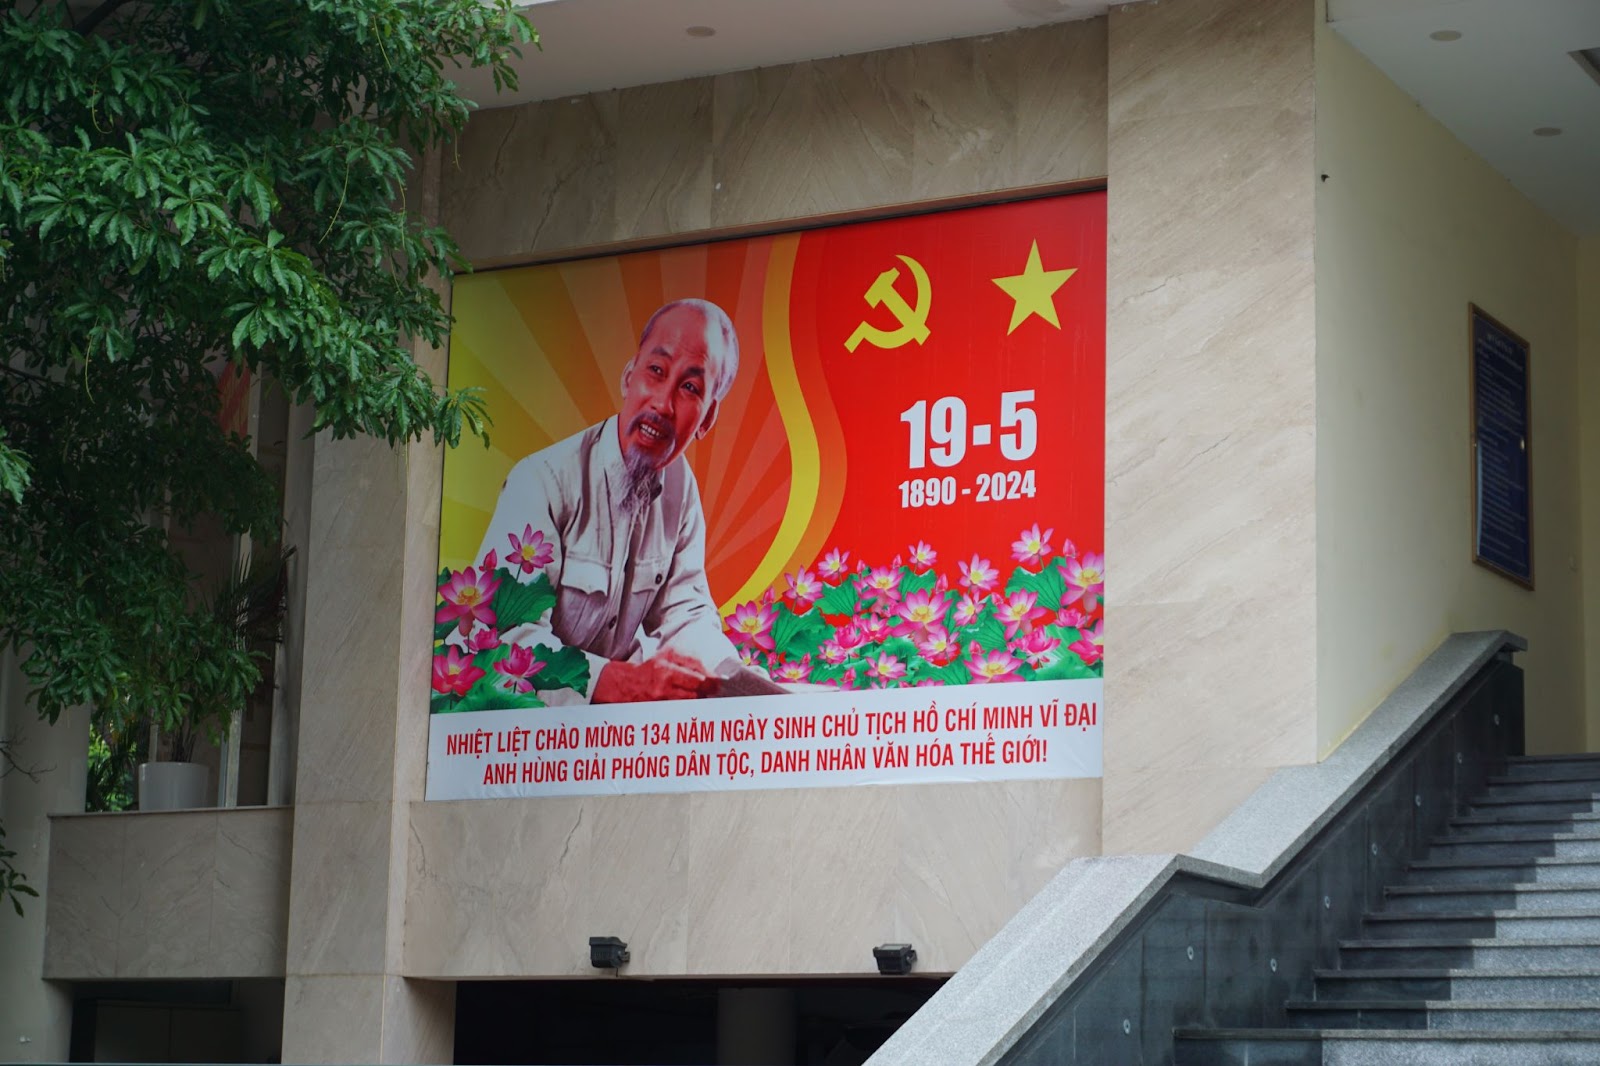 Hà Nội rợp sắc cờ hoa kỷ niệm ngày sinh Chủ tịch Hồ Chí Minh - Ảnh 3.